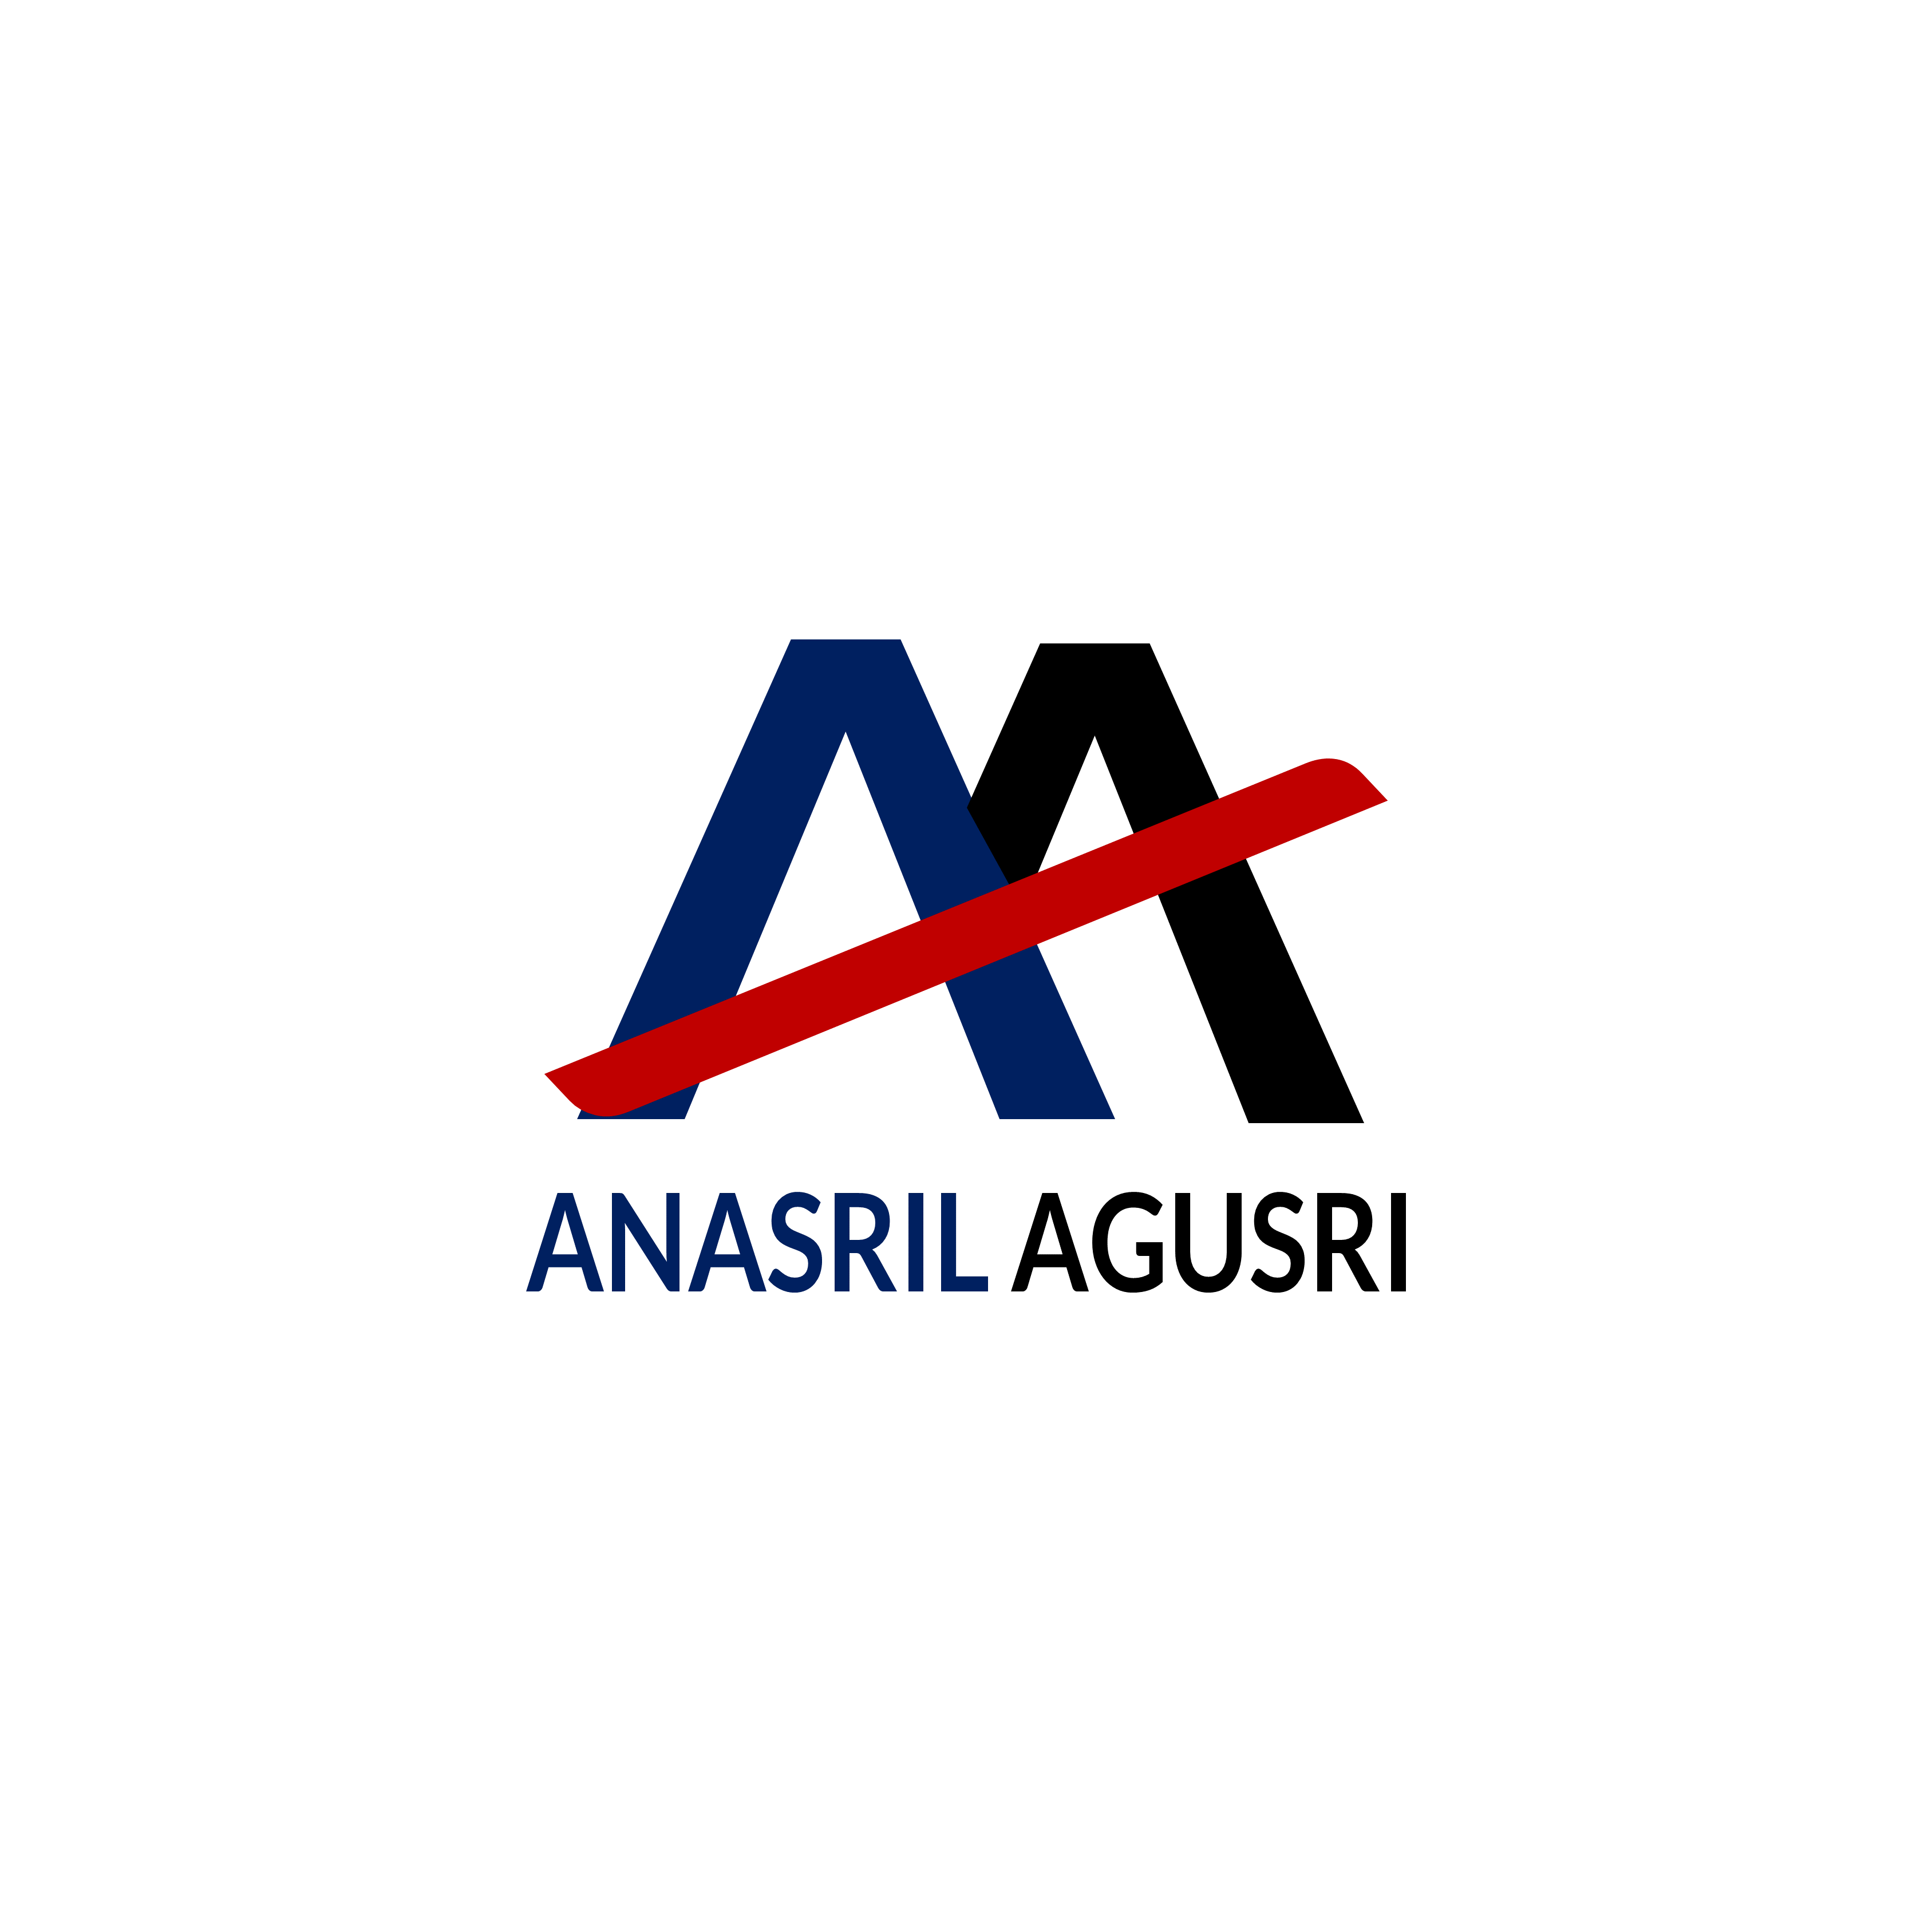 Anasril Agusri